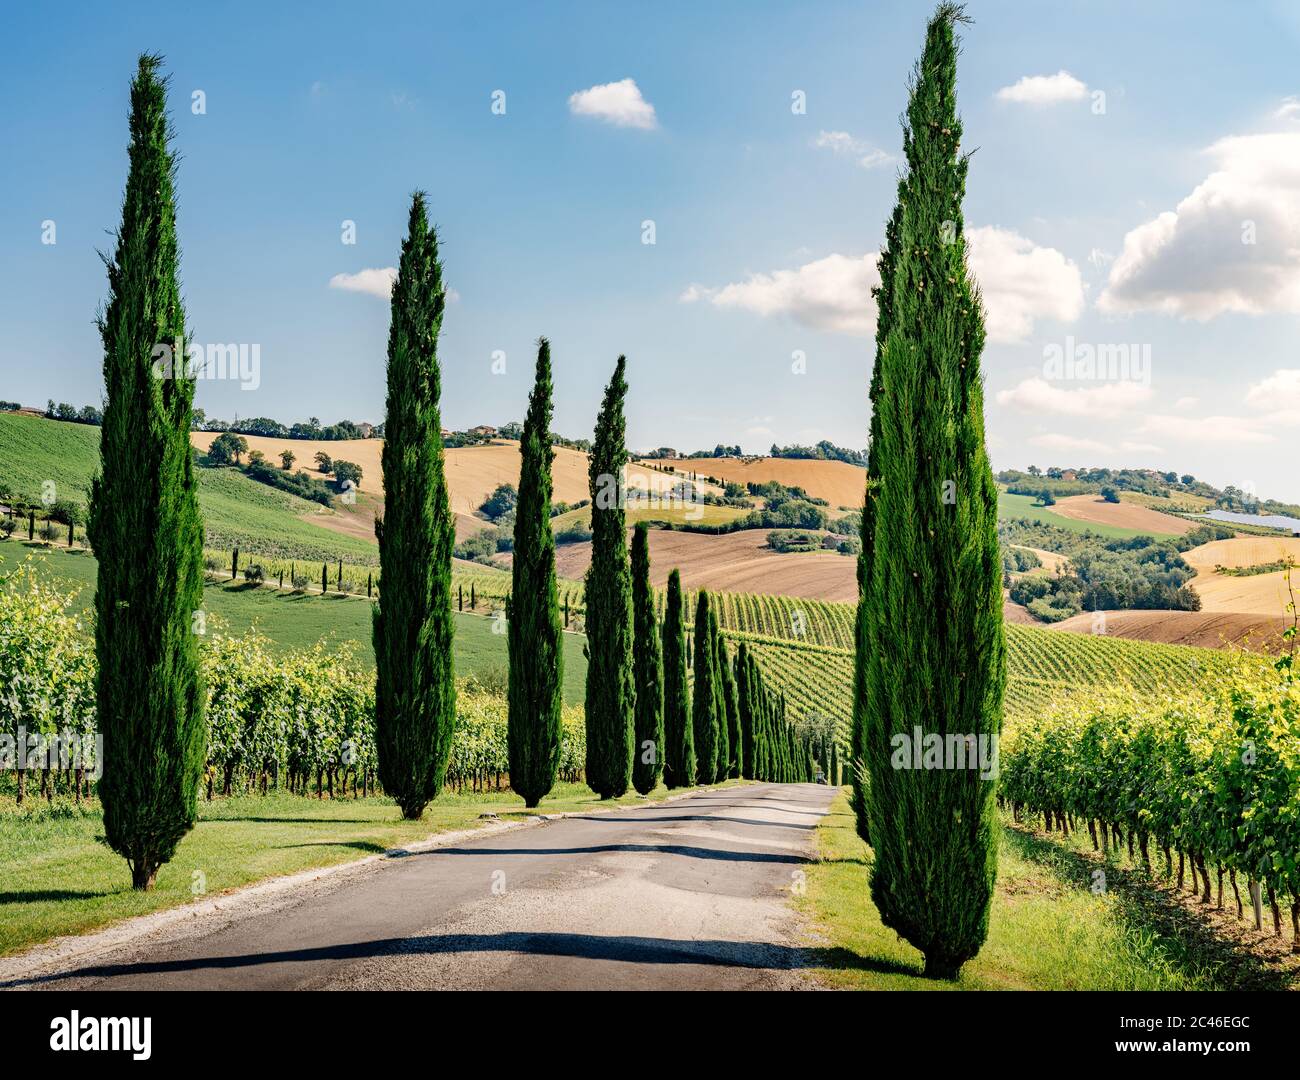 Región de las Marcas, colinas cultivadas en verano, cipreses y viñedos. Italia Foto de stock